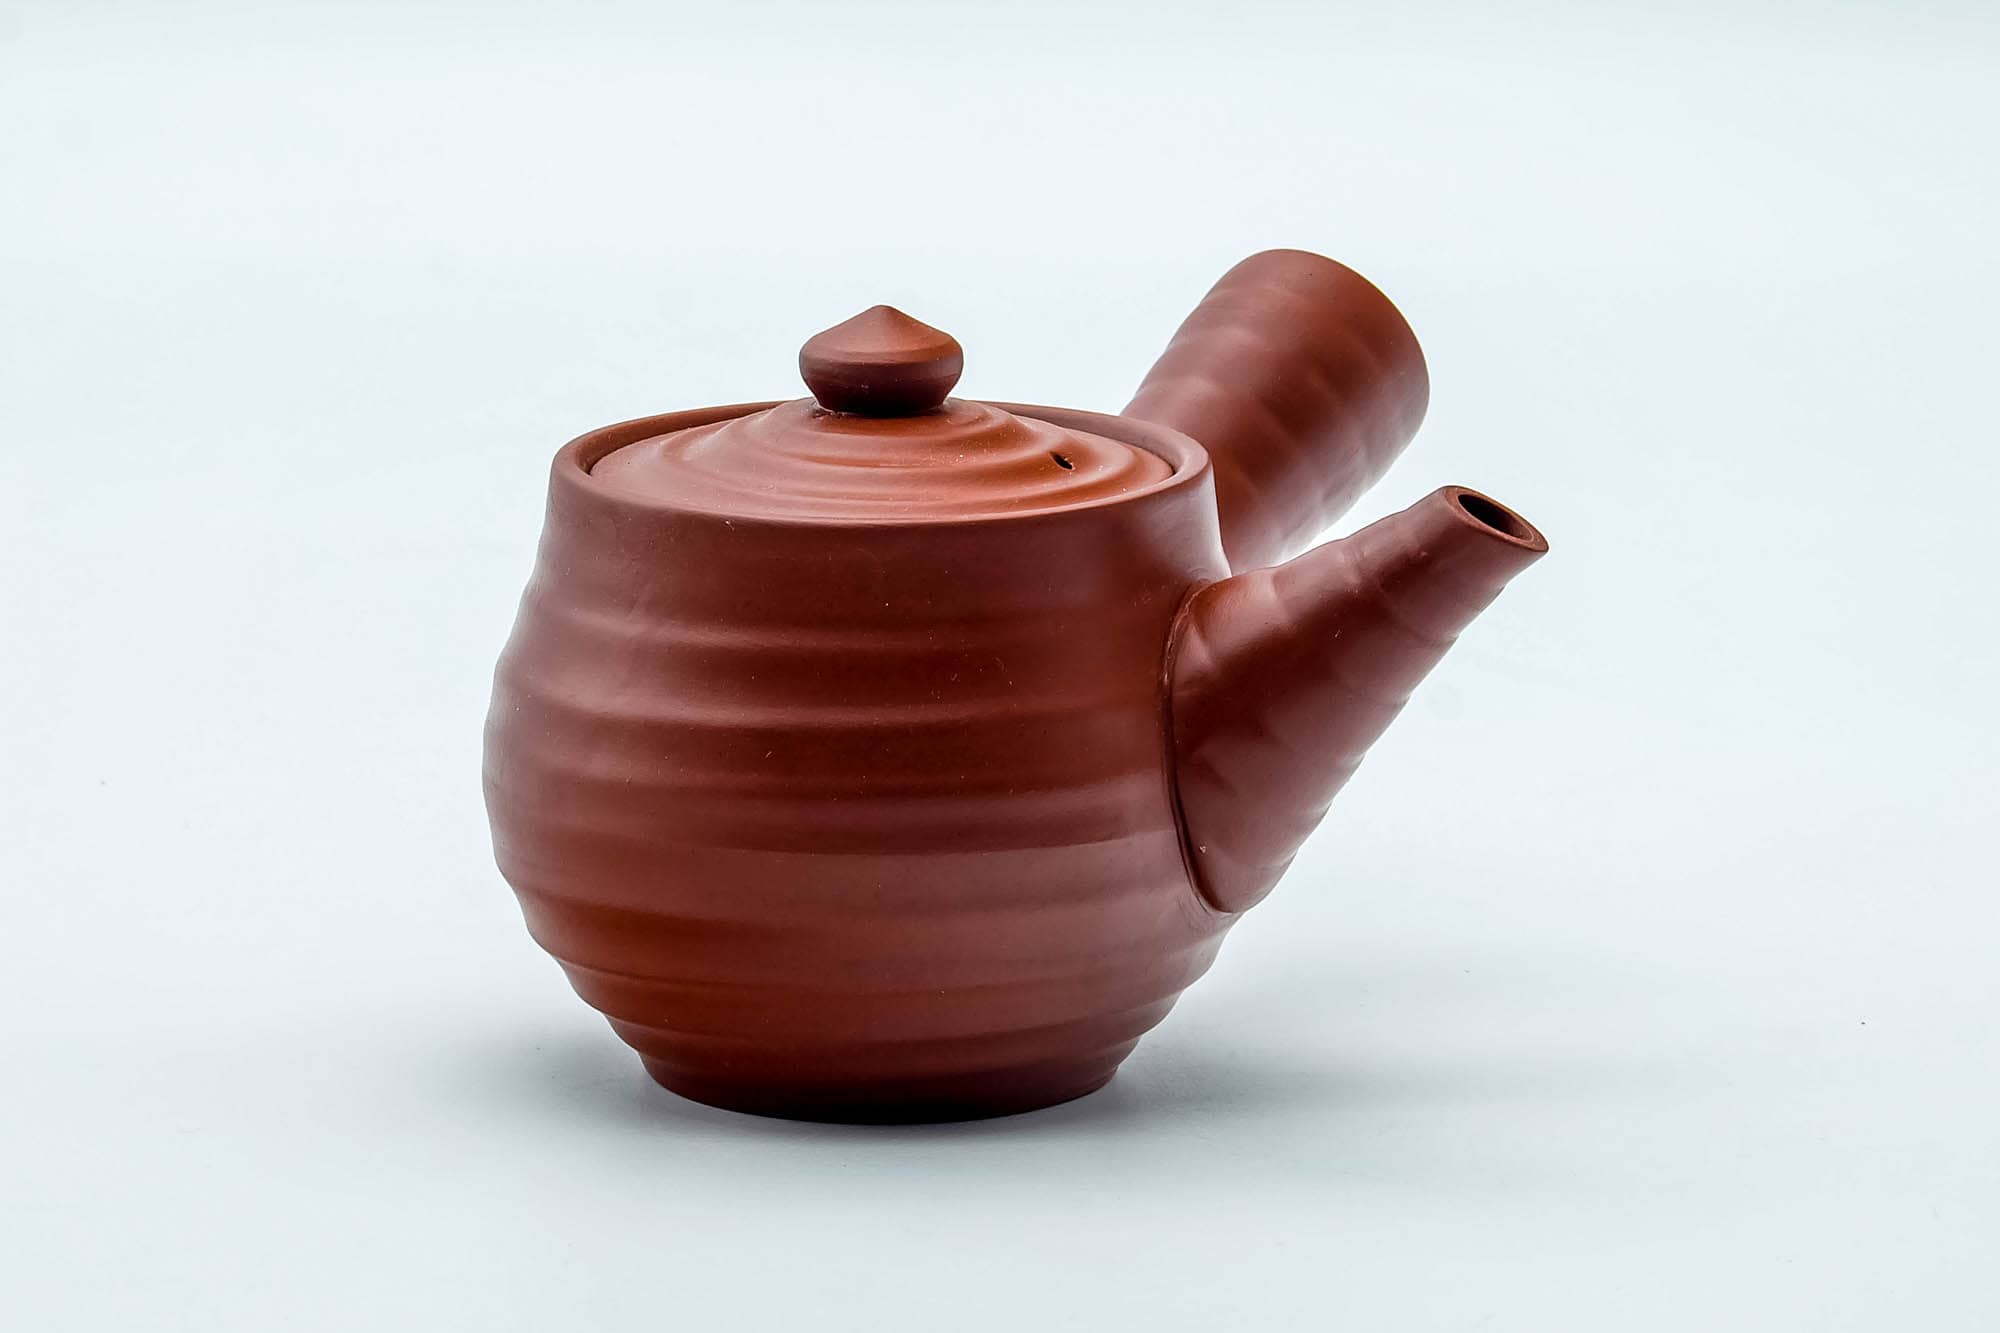 Japanese Kyusu - Spiraling Red Shudei Tokoname-yaki Ceramic Filter Teapot - 260ml